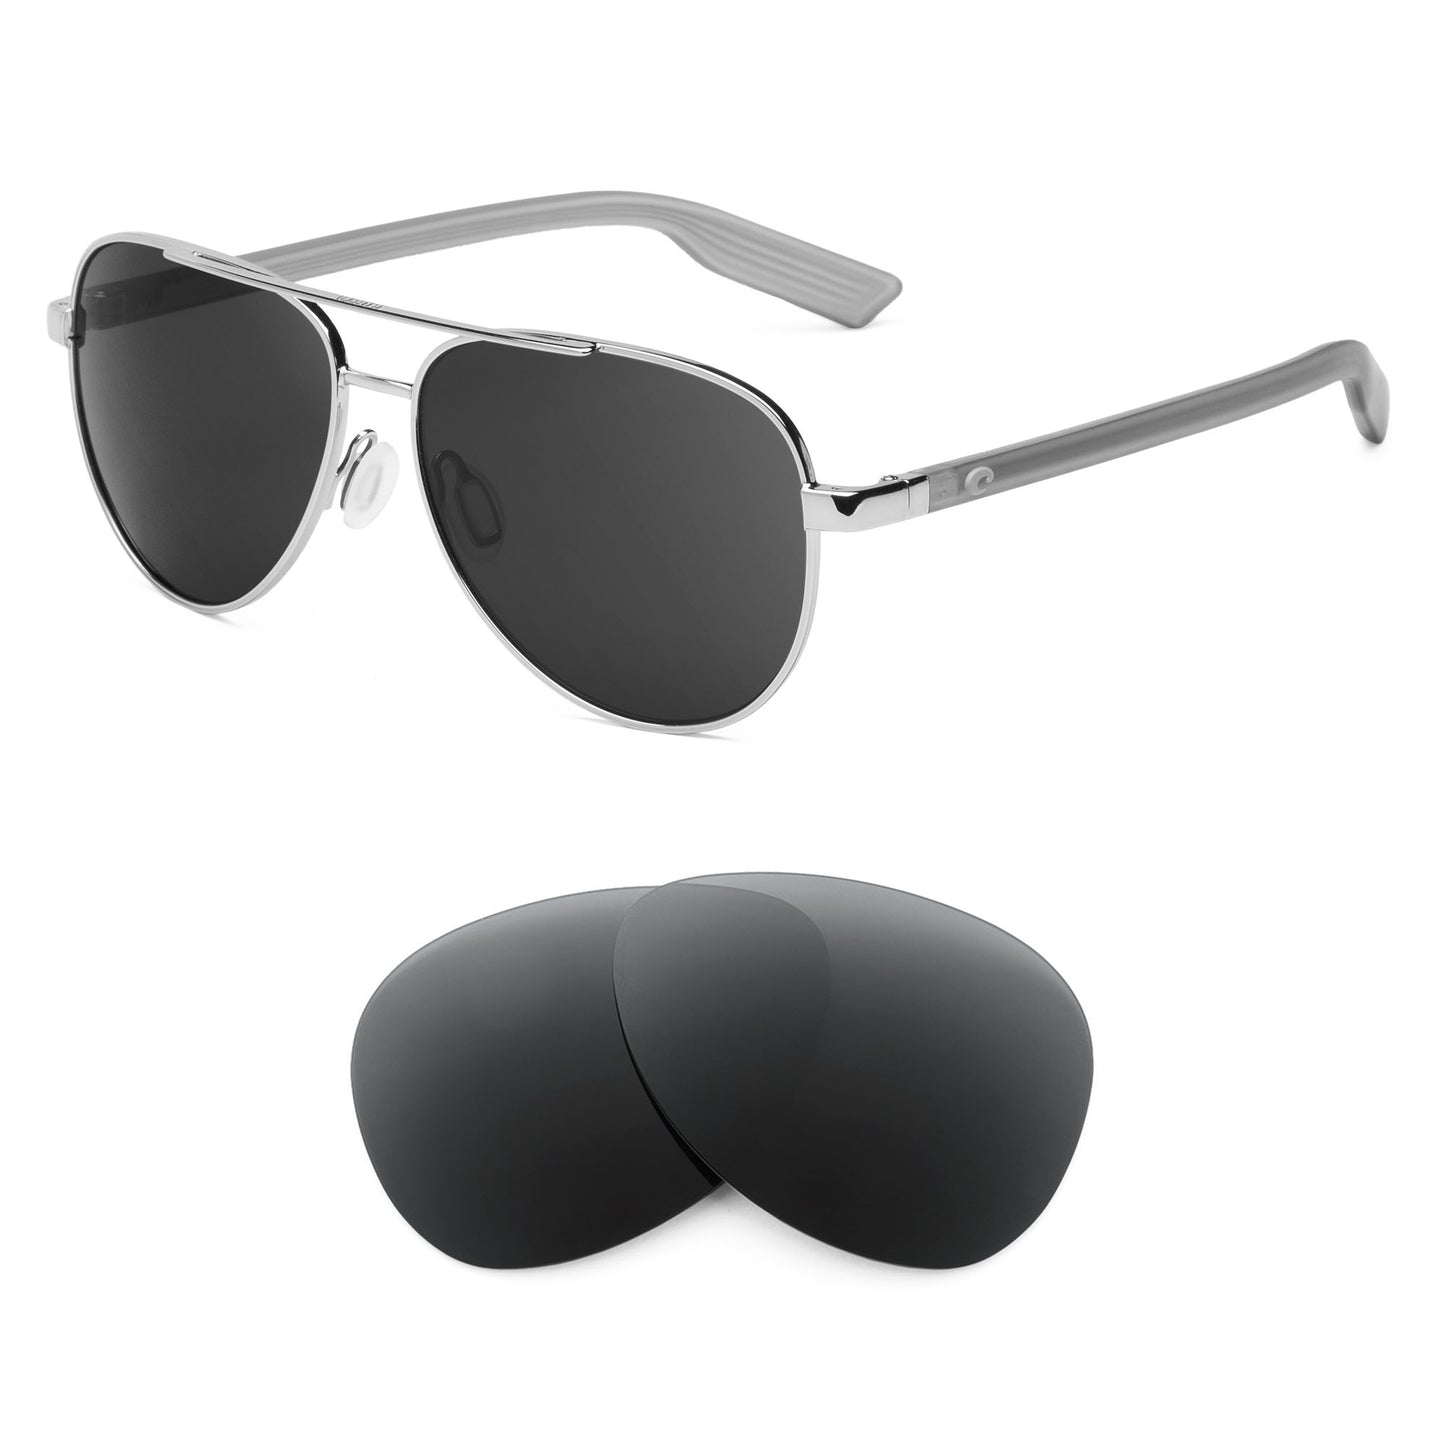 Costa Peli sunglasses with replacement lenses